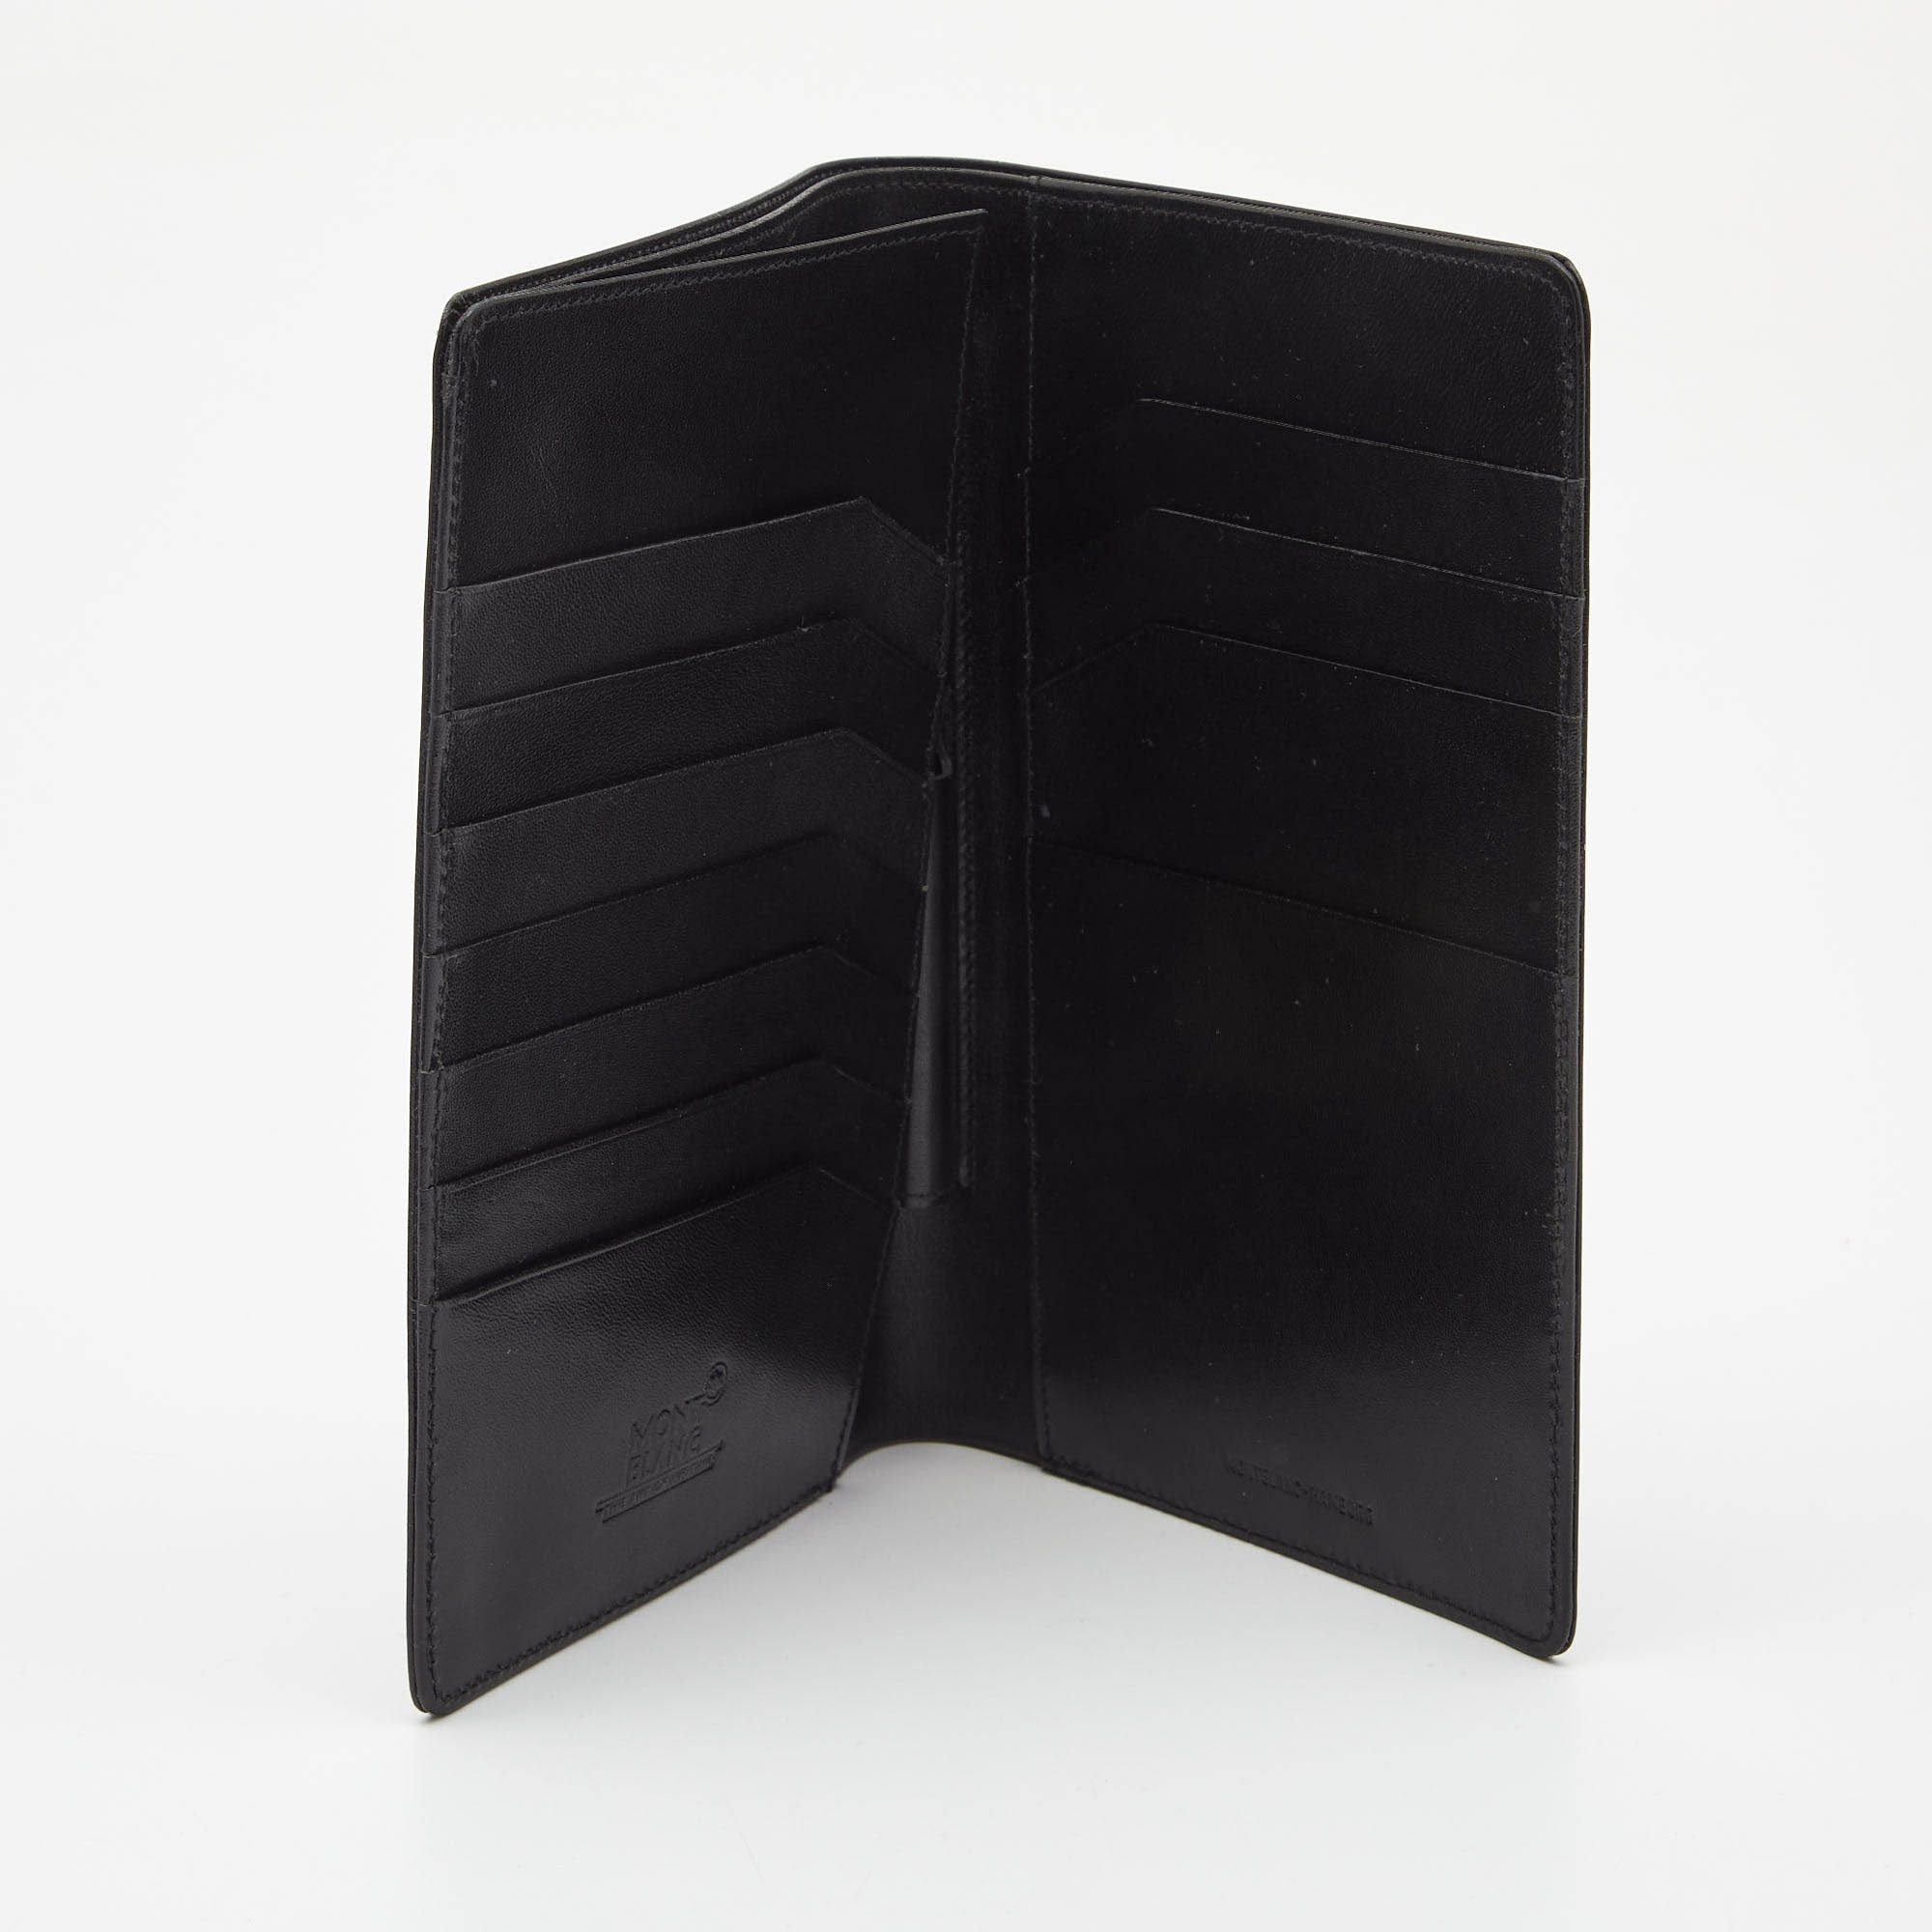 

Montblanc Black Leather Meisterstuck Passport Holder